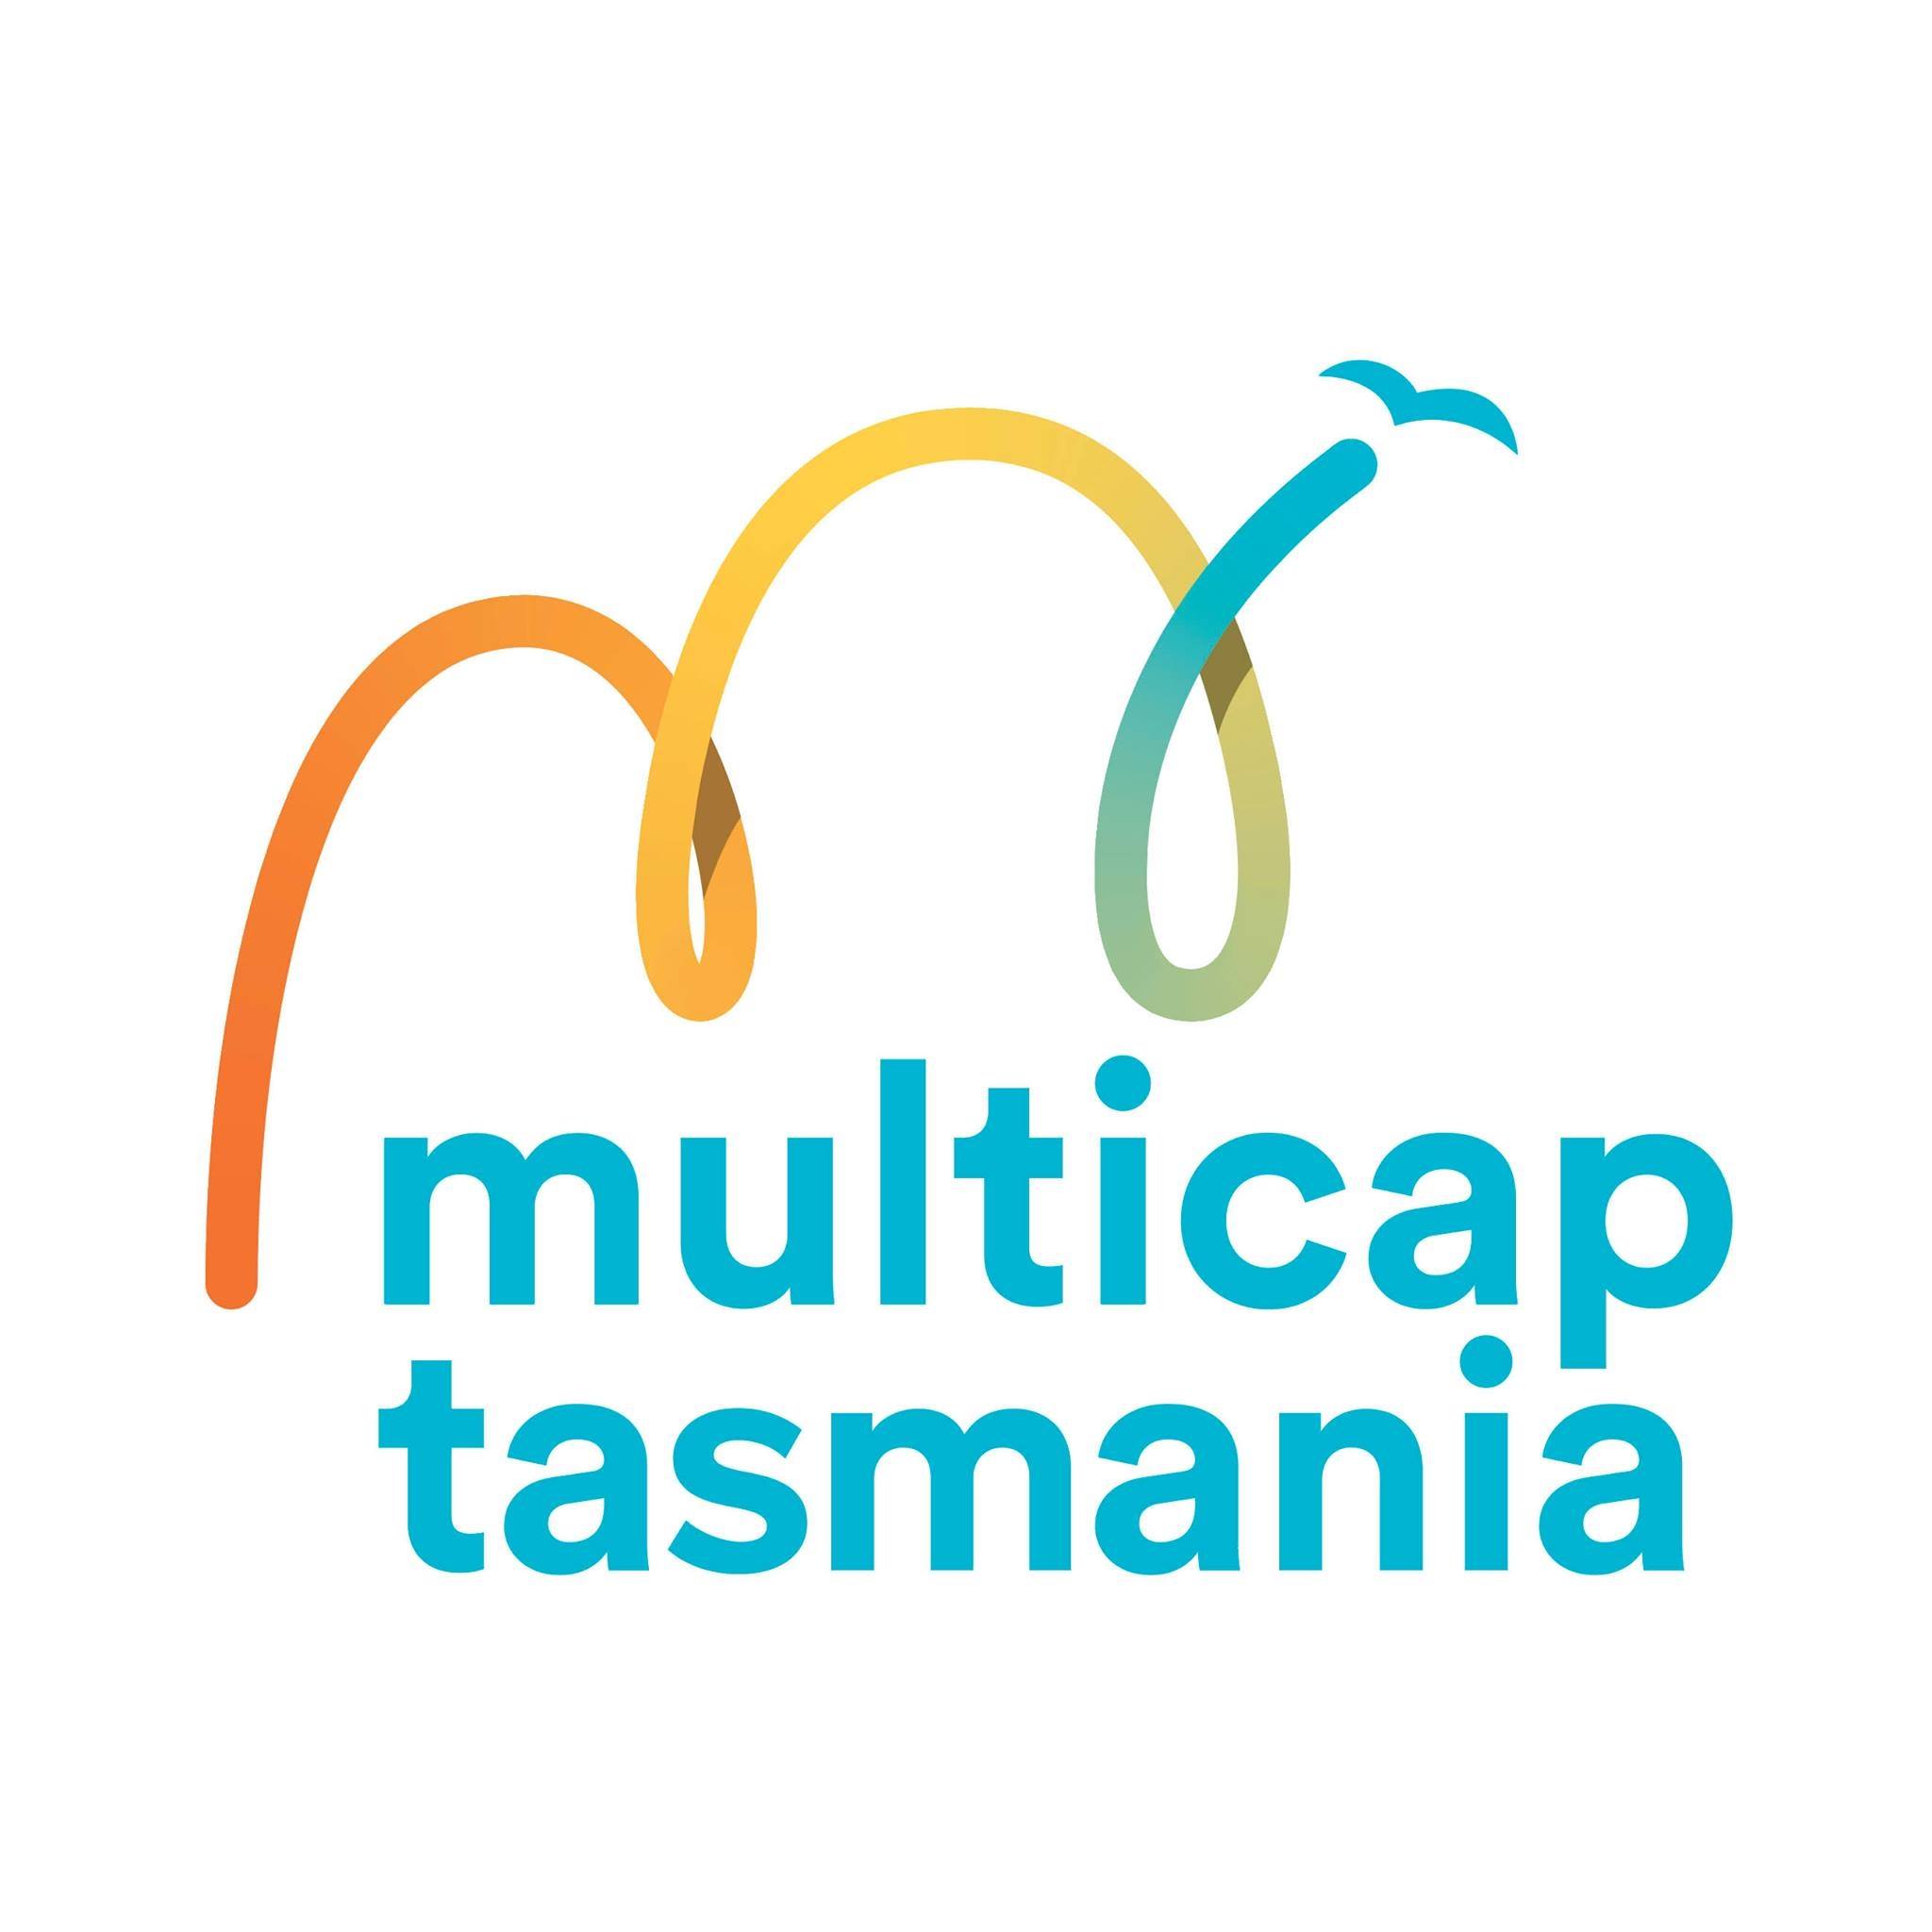 Multicap Tasmania